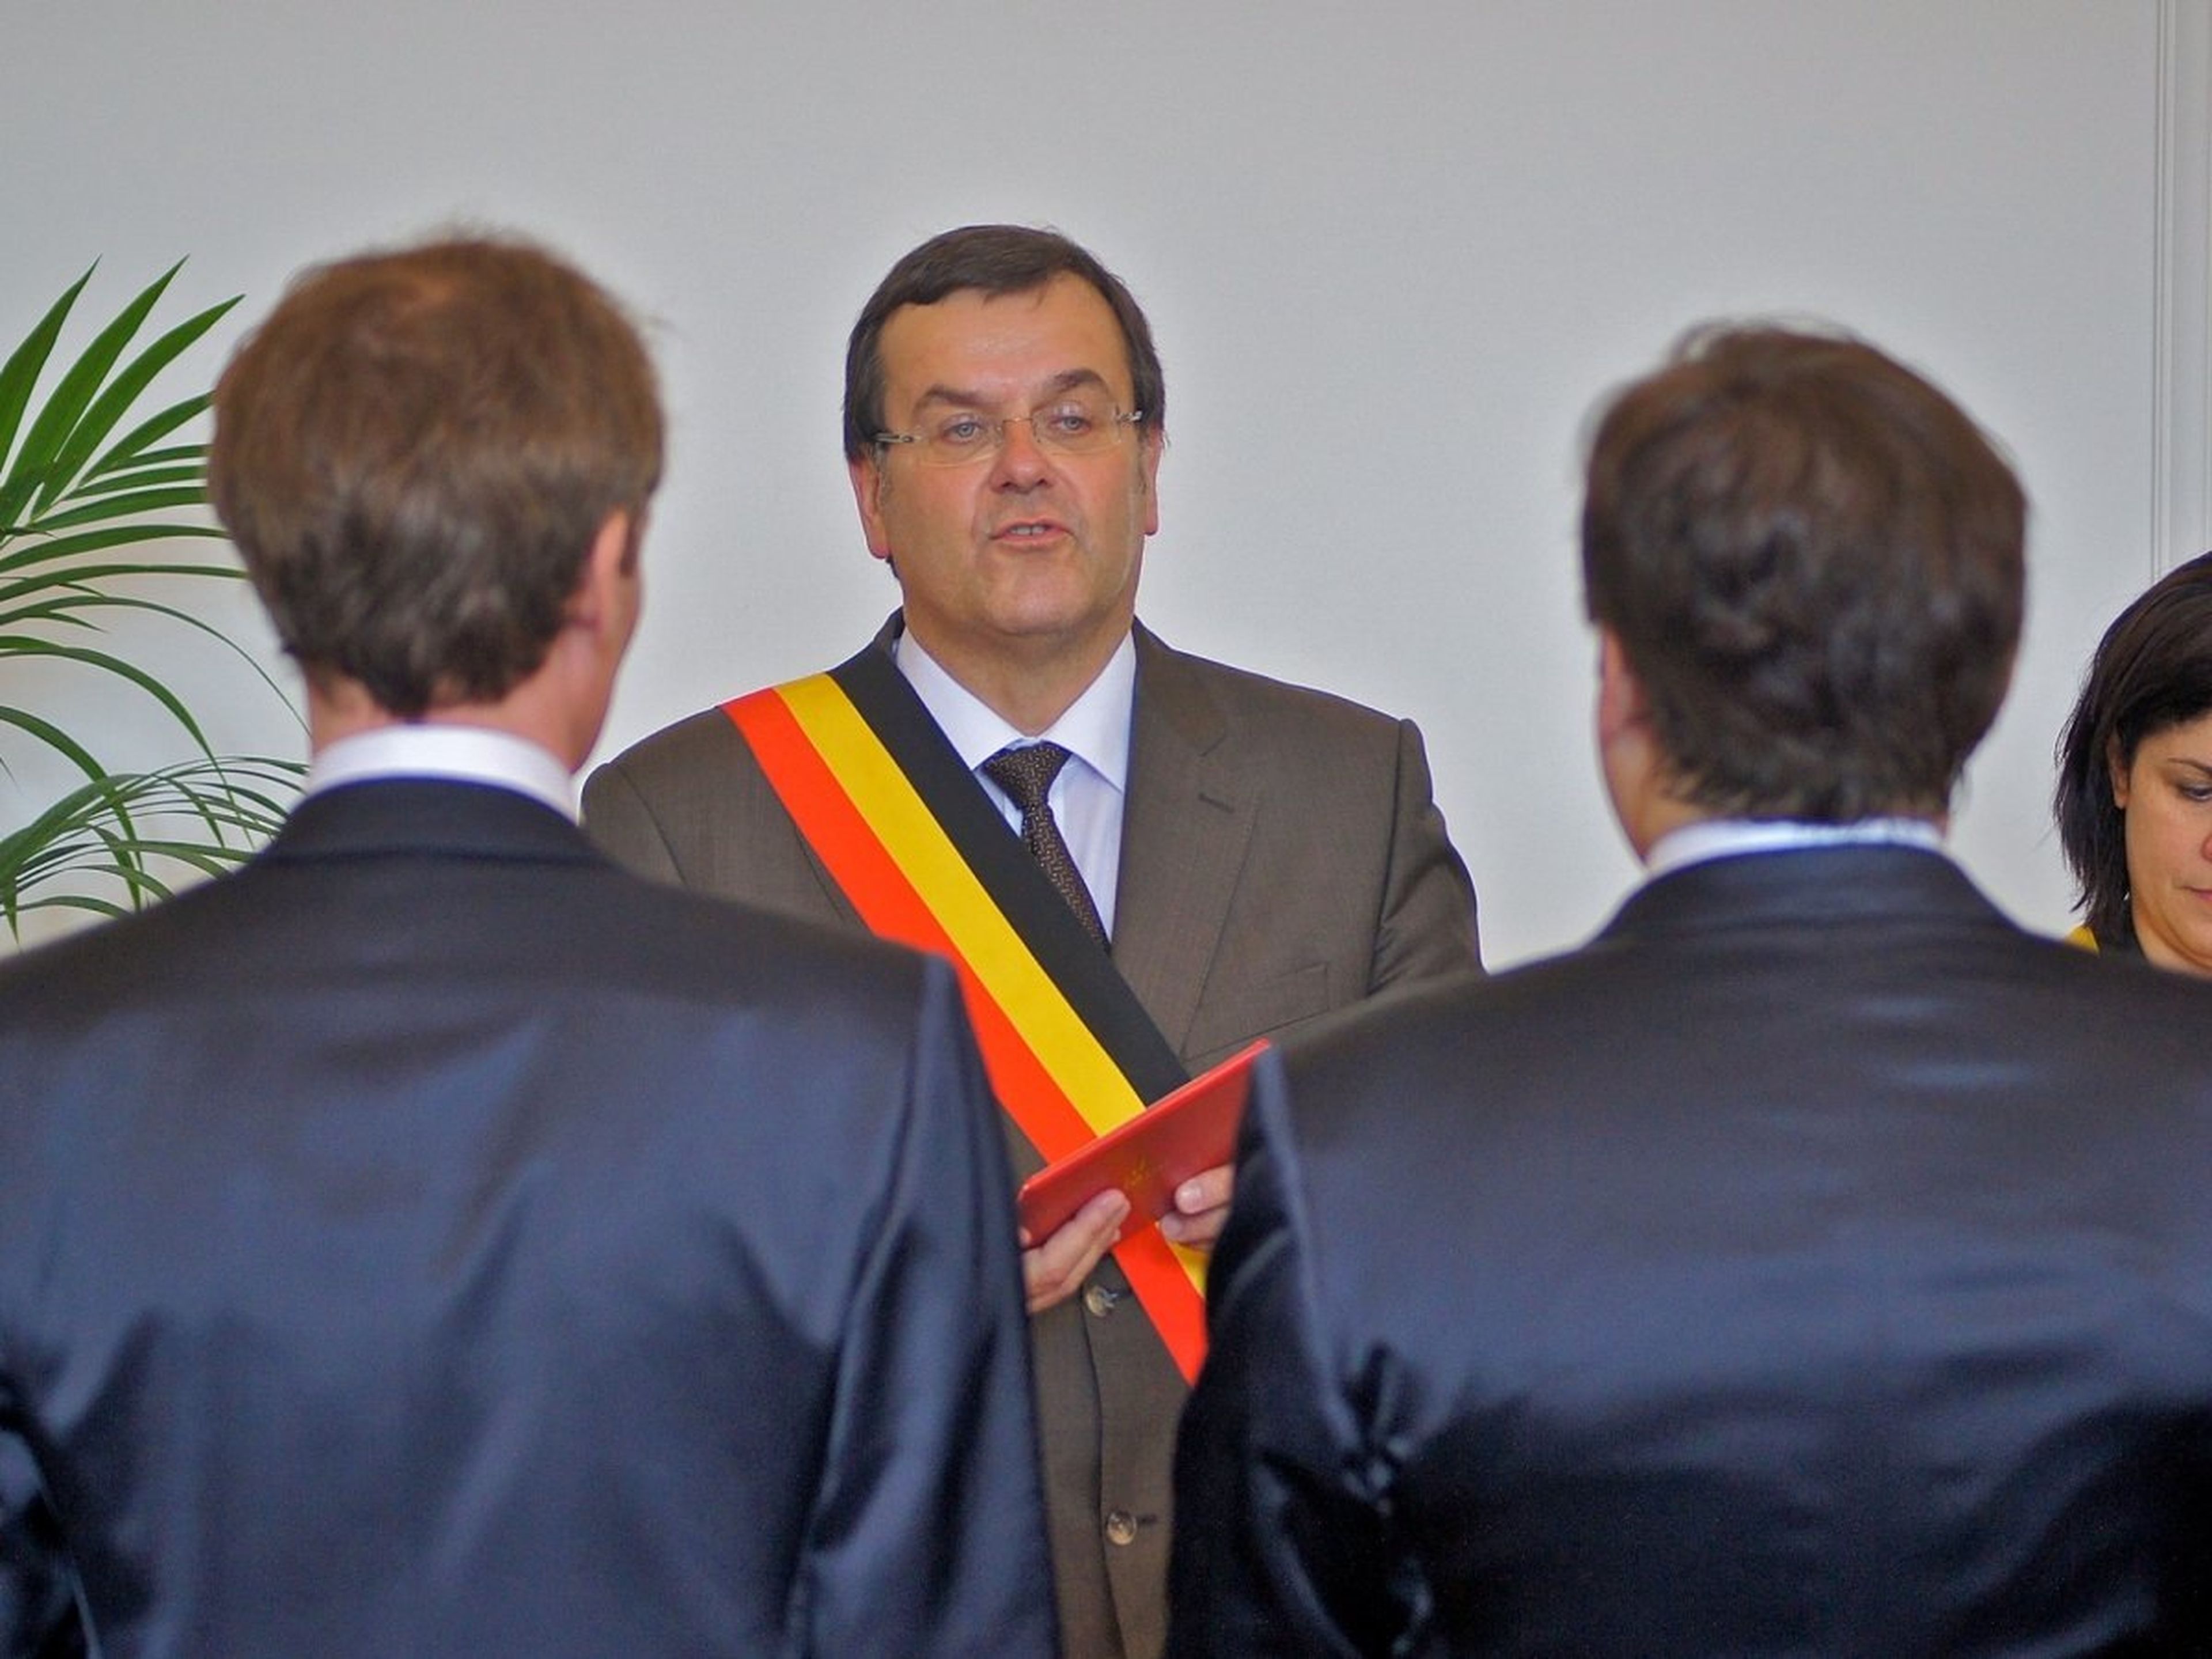 Una boda oficiada por el alcalde Willy Demeyer en Lieja (Bélgica) el 13 de julio de 2013.